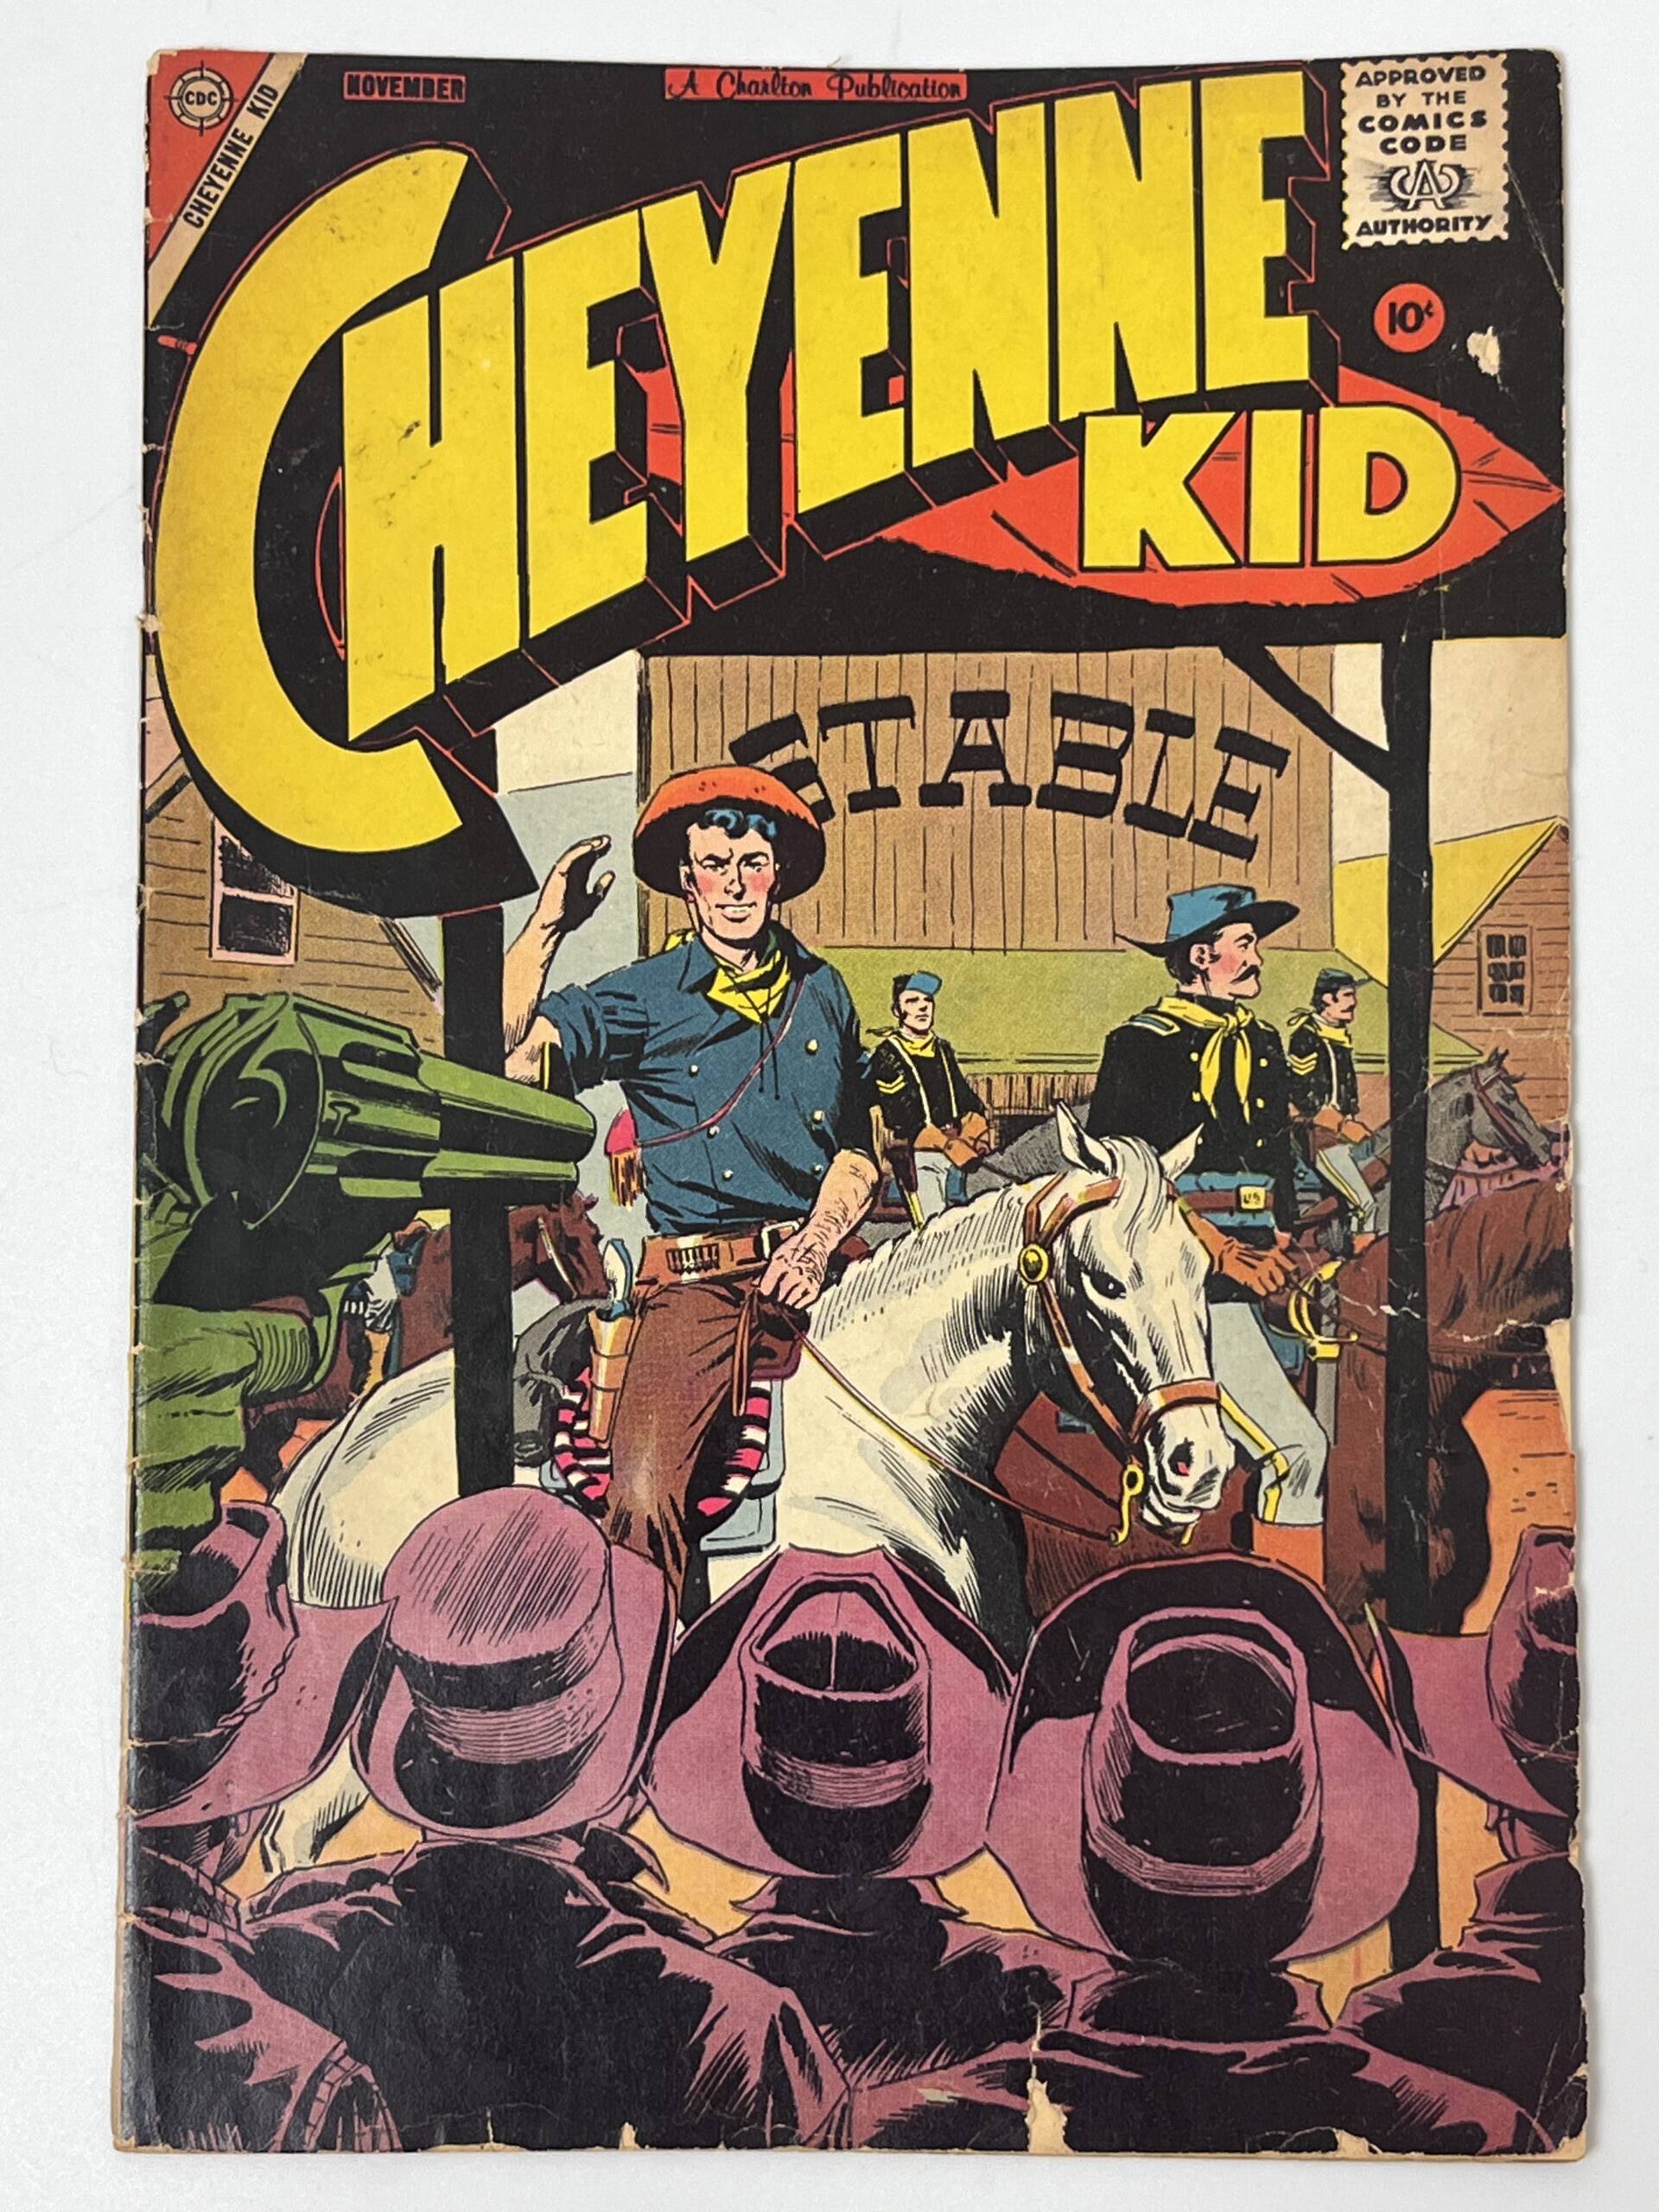 Cheyenne Kid #14 (1958) in 3.5 Very Good-